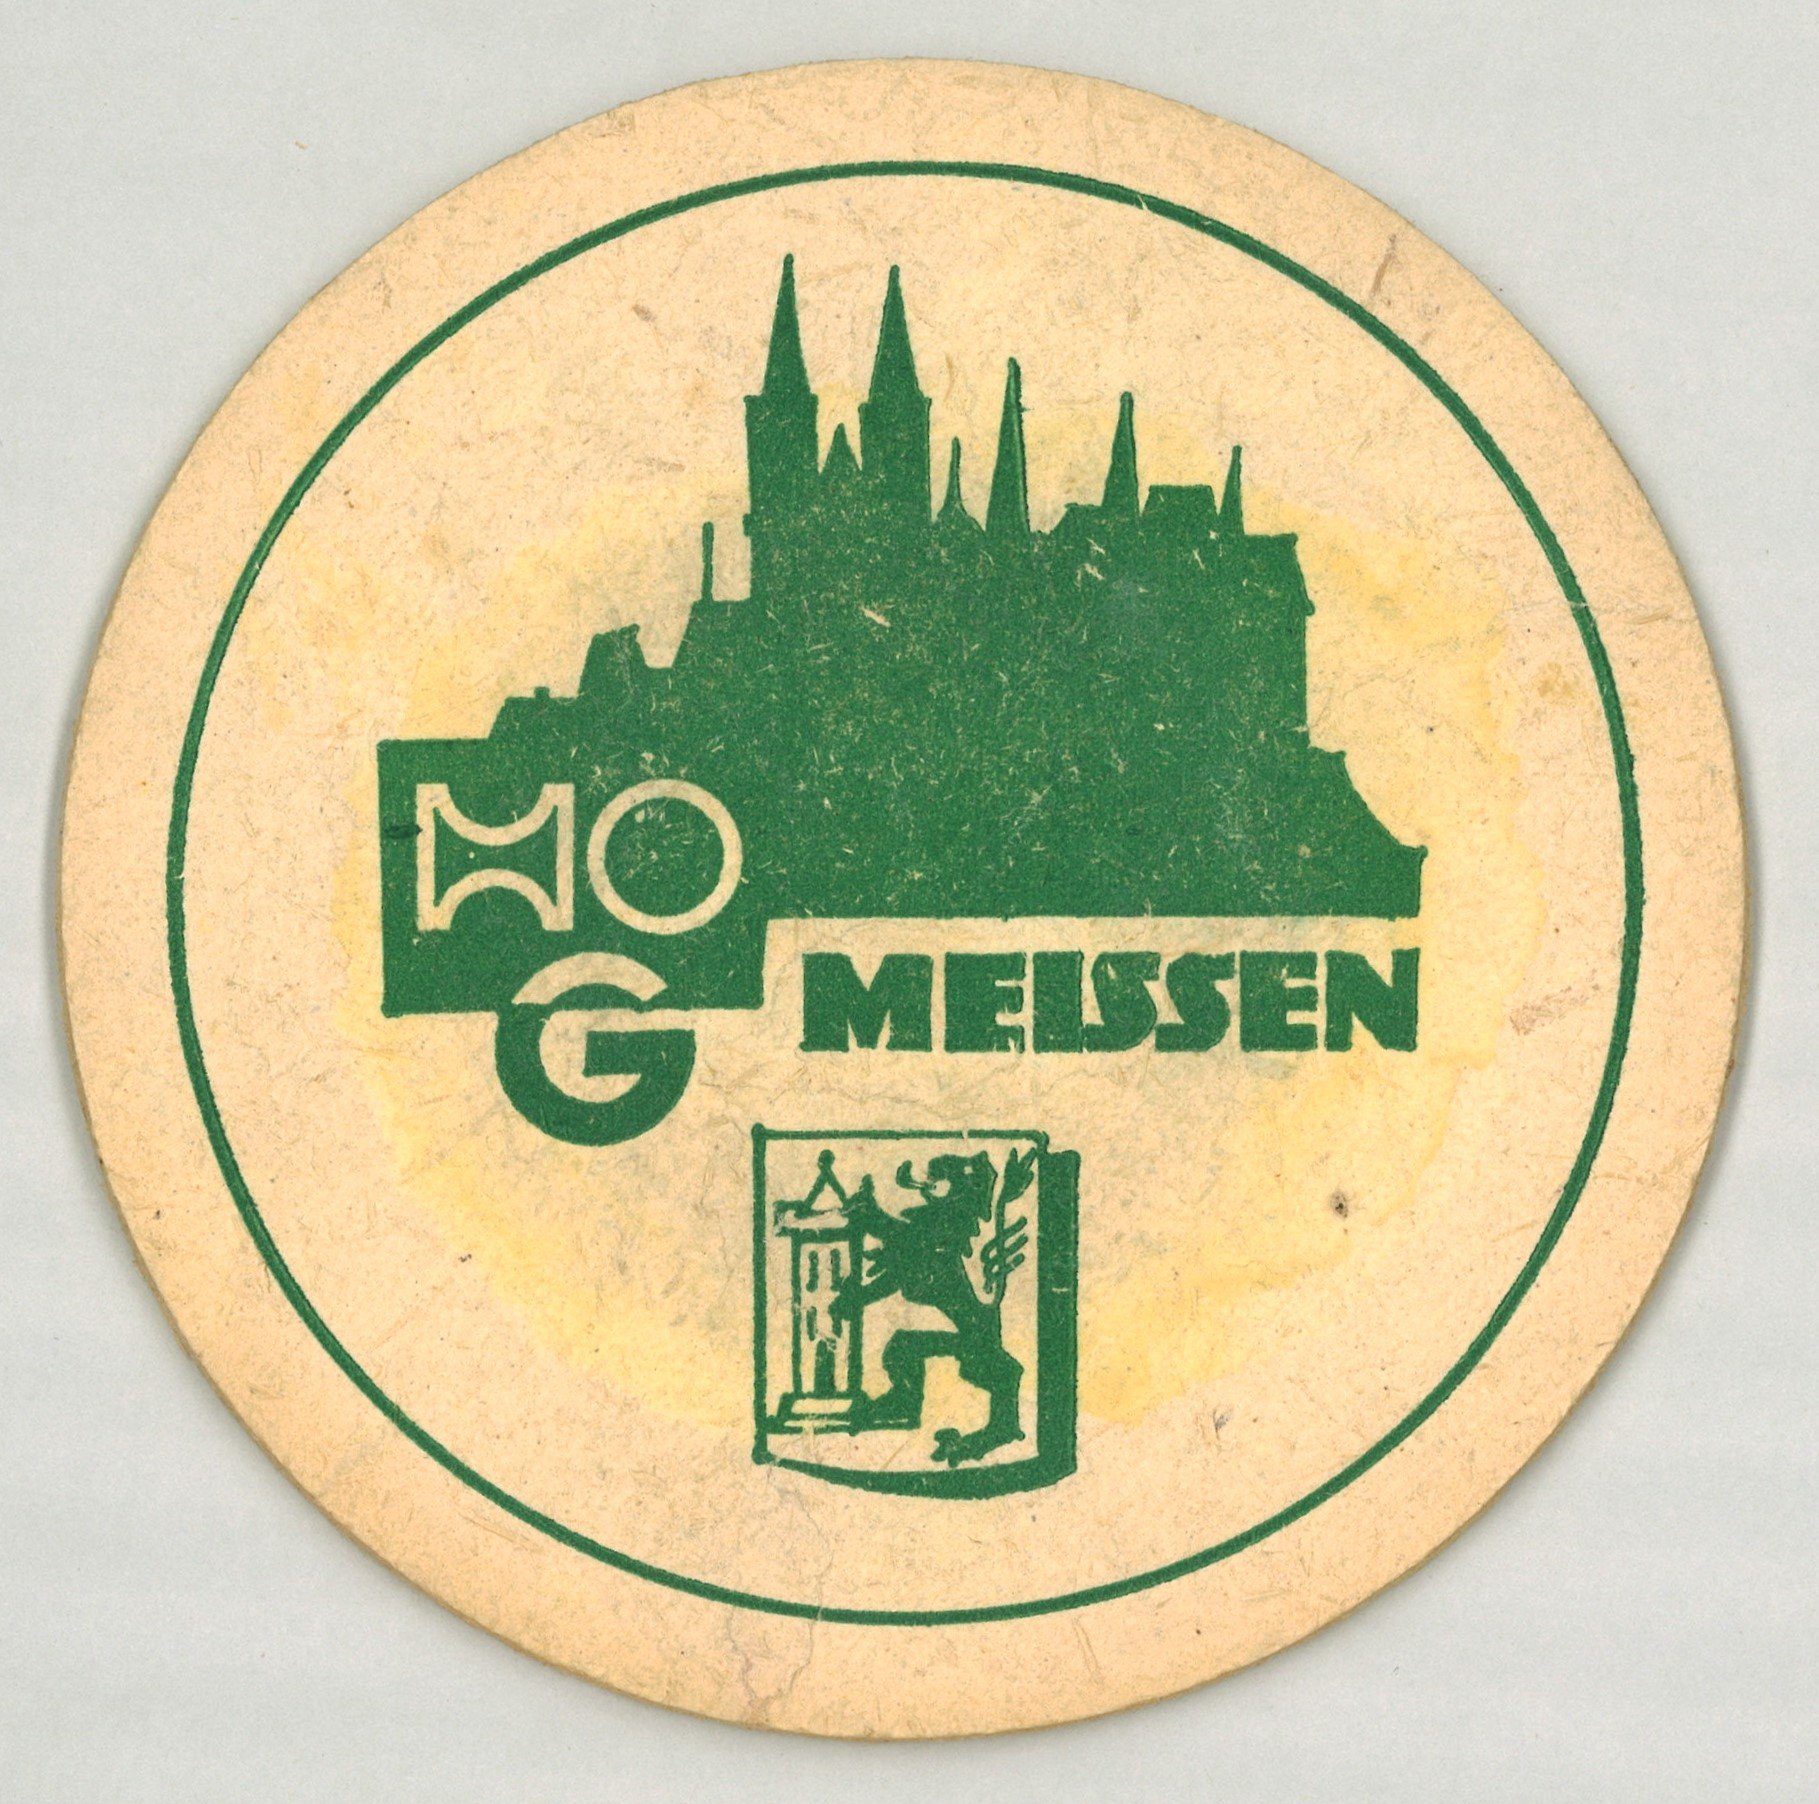 Meißen: HOG Meißen (Landesgeschichtliche Vereinigung für die Mark Brandenburg e.V., Archiv CC BY)